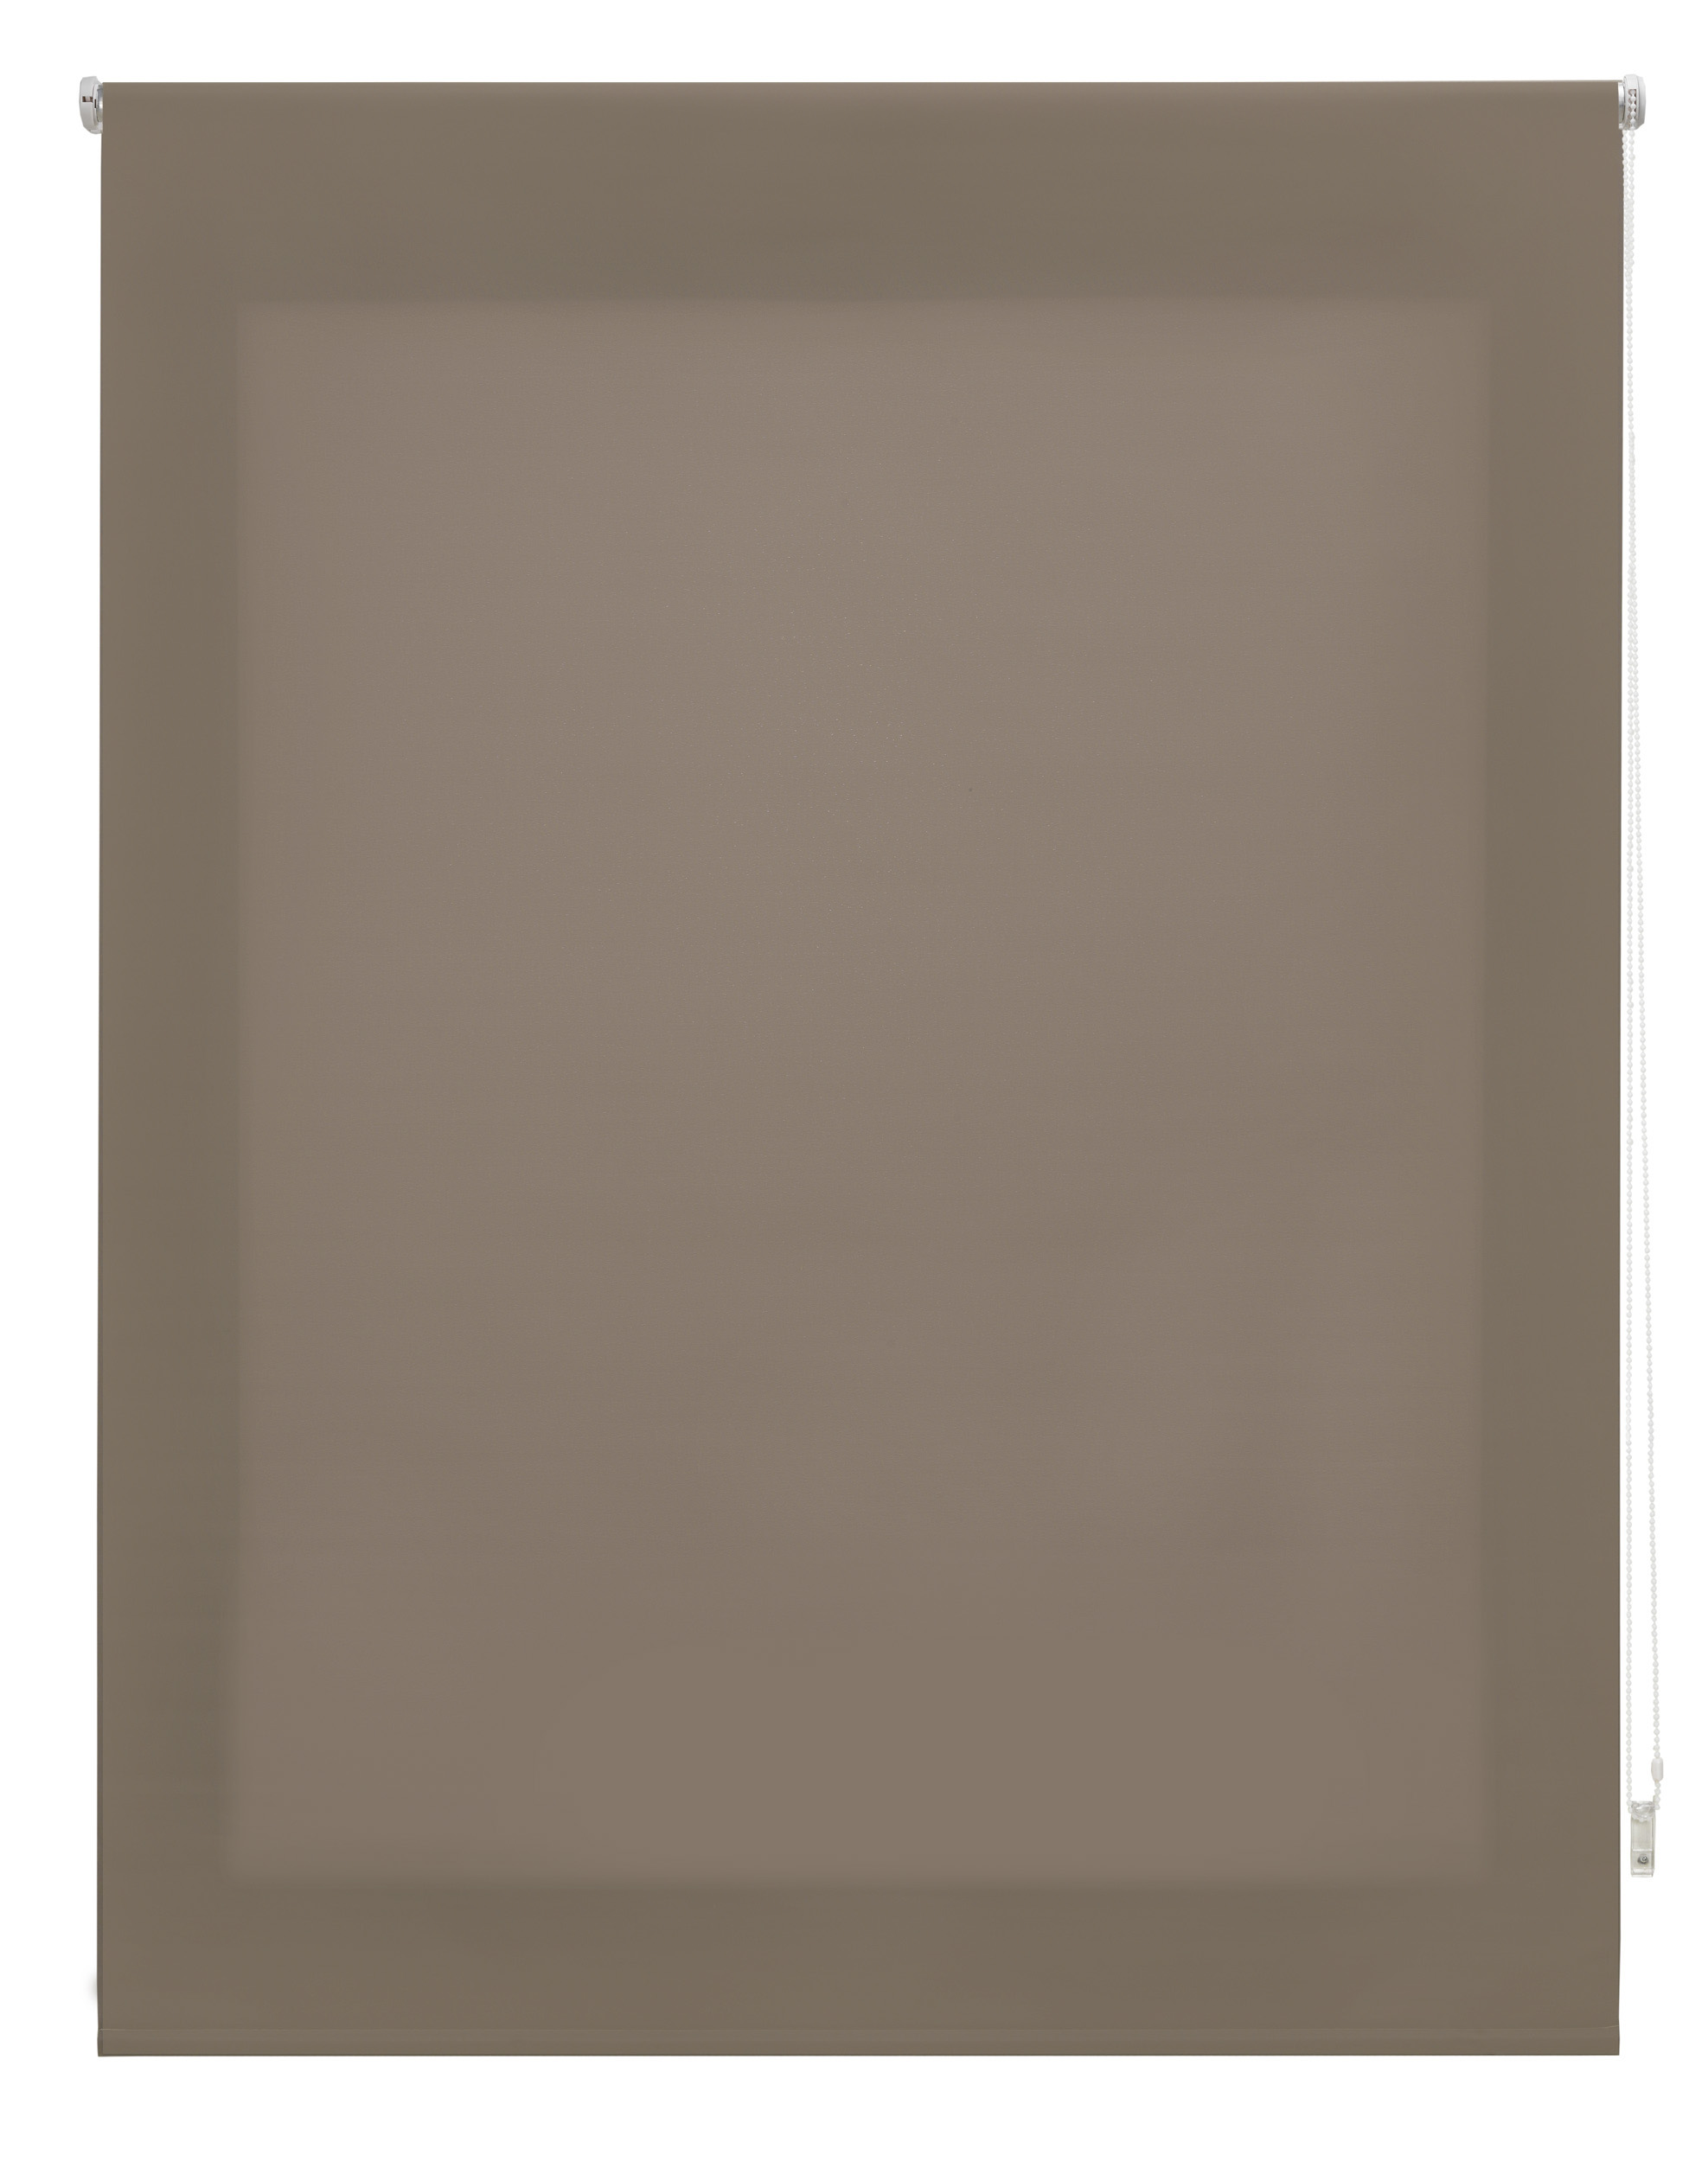 Blindecor Ara Premium | Estor liso translúcido de alta calidad - Piedra,  200 x 190 cm (Ancho por Alto). Tamaño de la Tela 197 x 185 cm . Estores  para